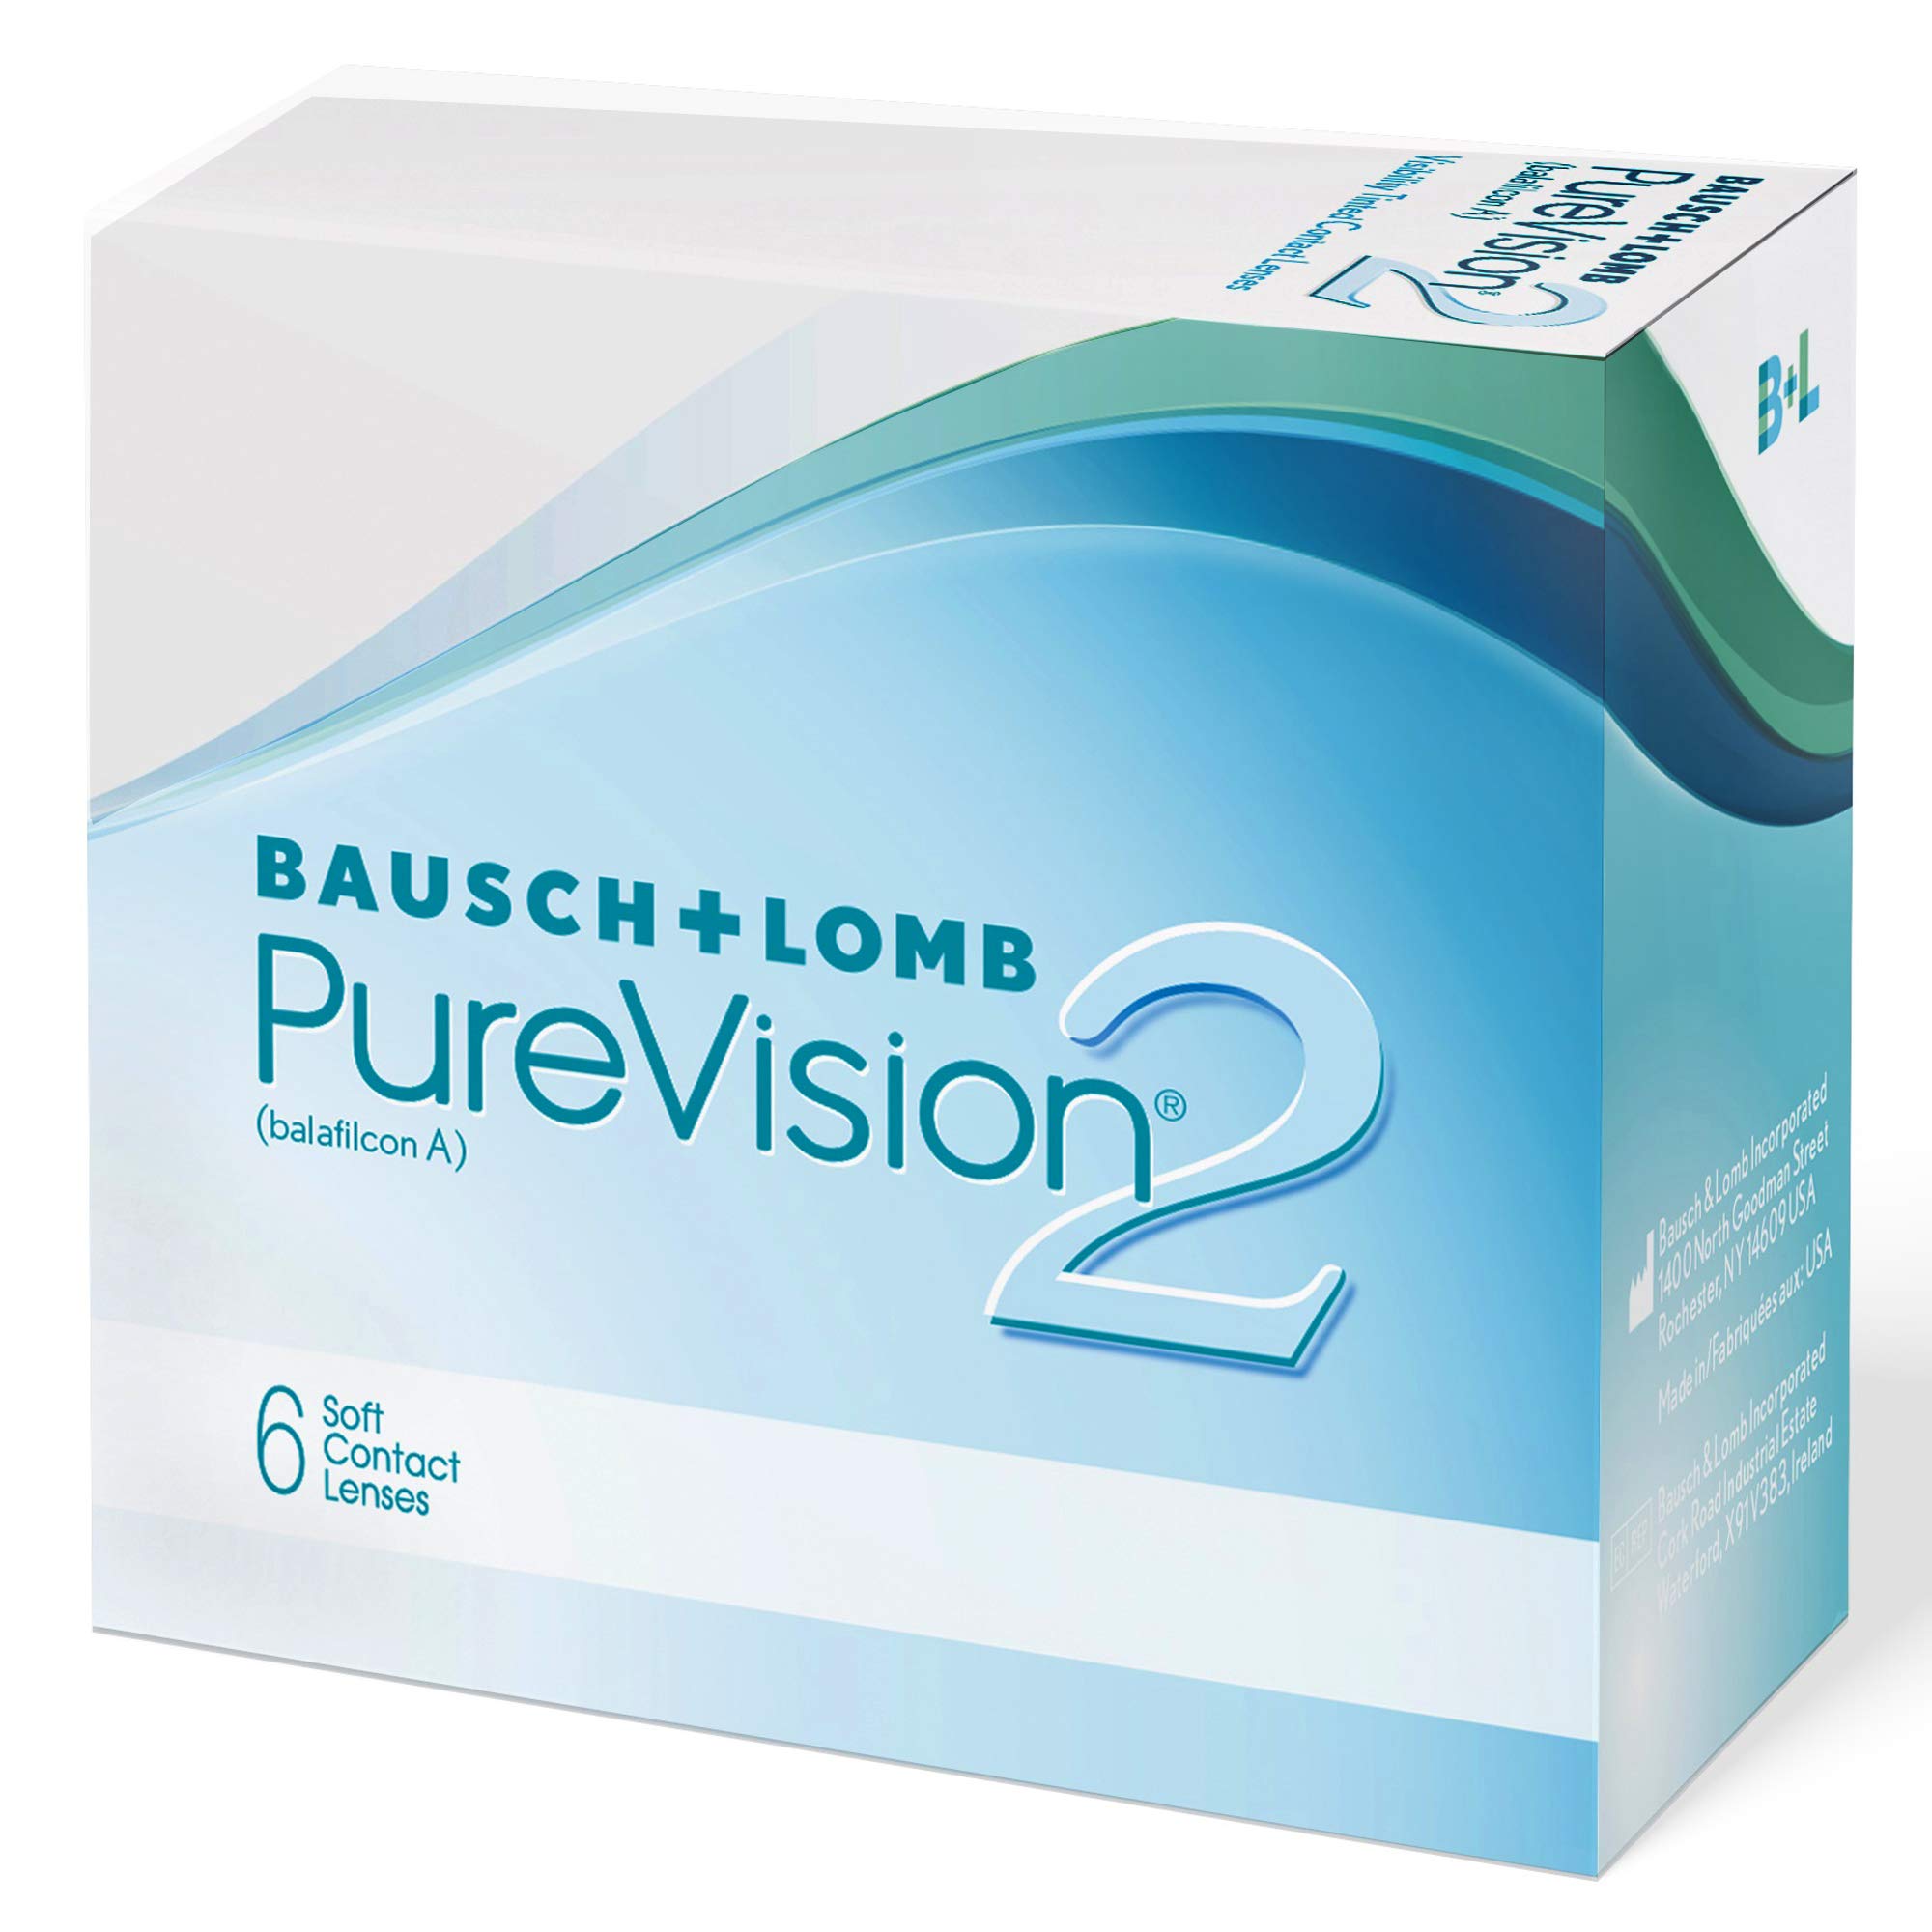 Bausch + Lomb PureVision 2 Monatslinsen, sehr dünne sphärische Kontaktlinsen, weich, 6 Stück / BC 8.6 mm / DIA 14 / -5 50 Dioptrien